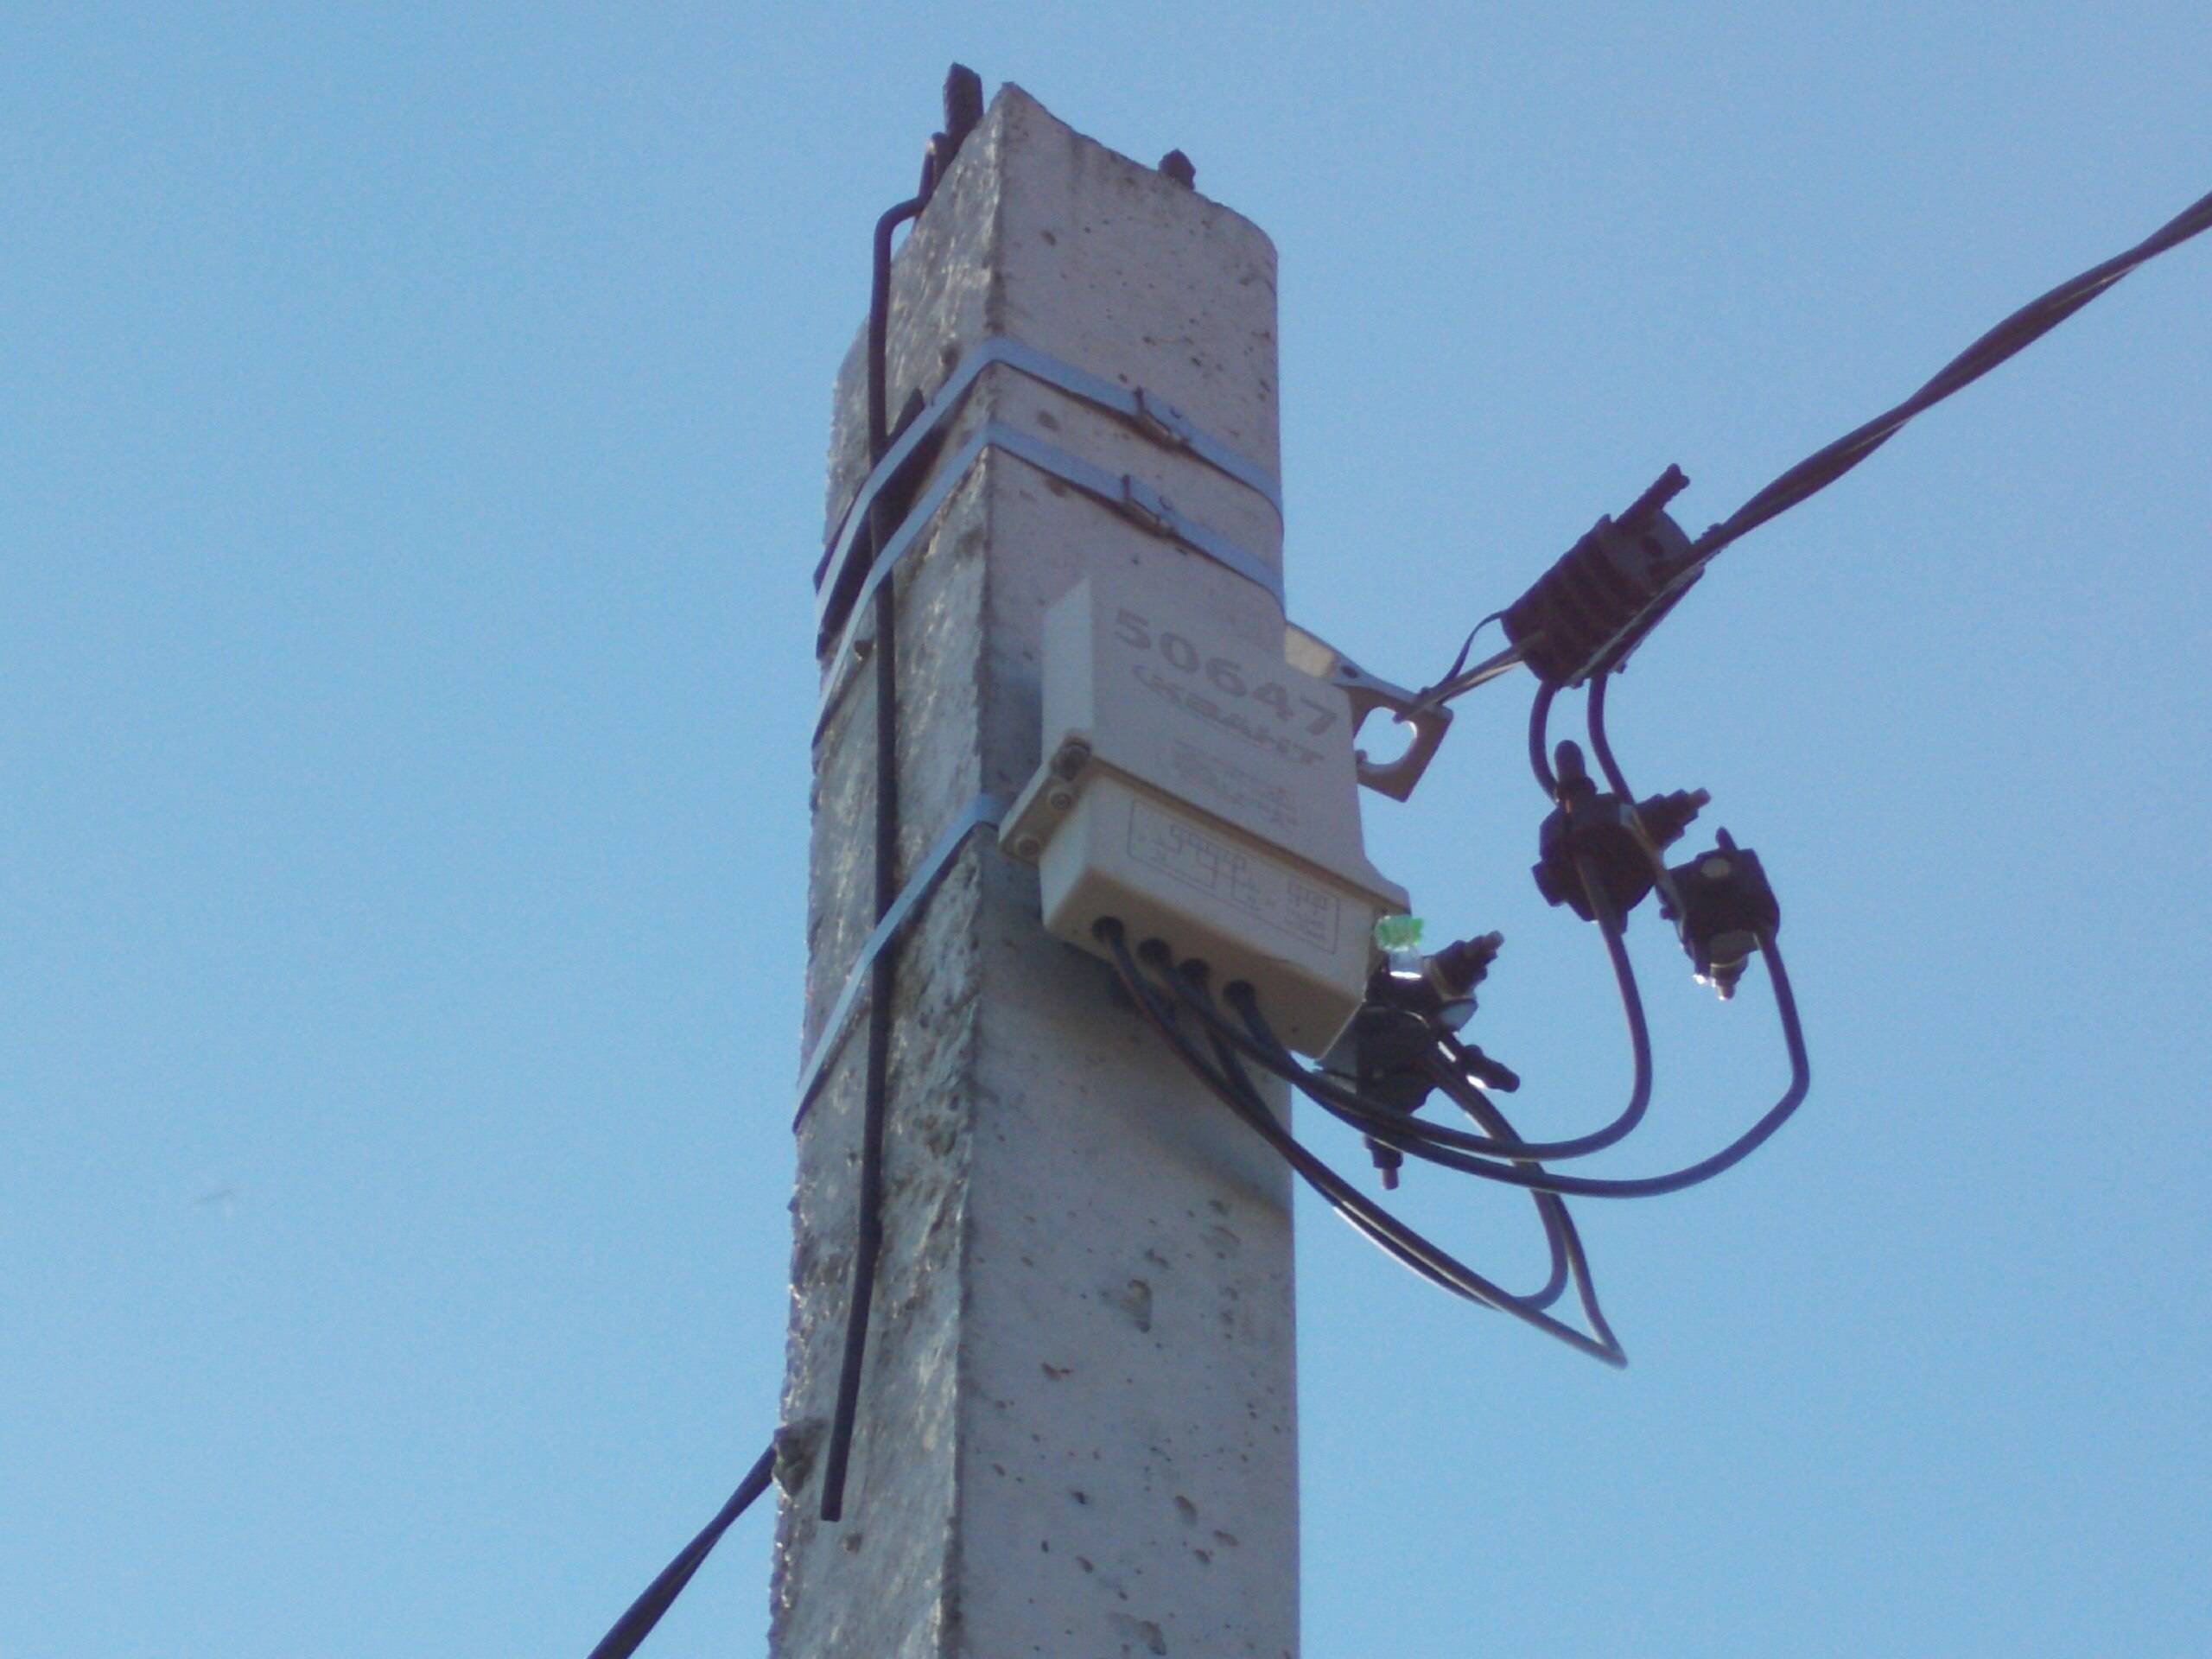 Счетчики электроэнергии на столбах с дистанционным считыванием